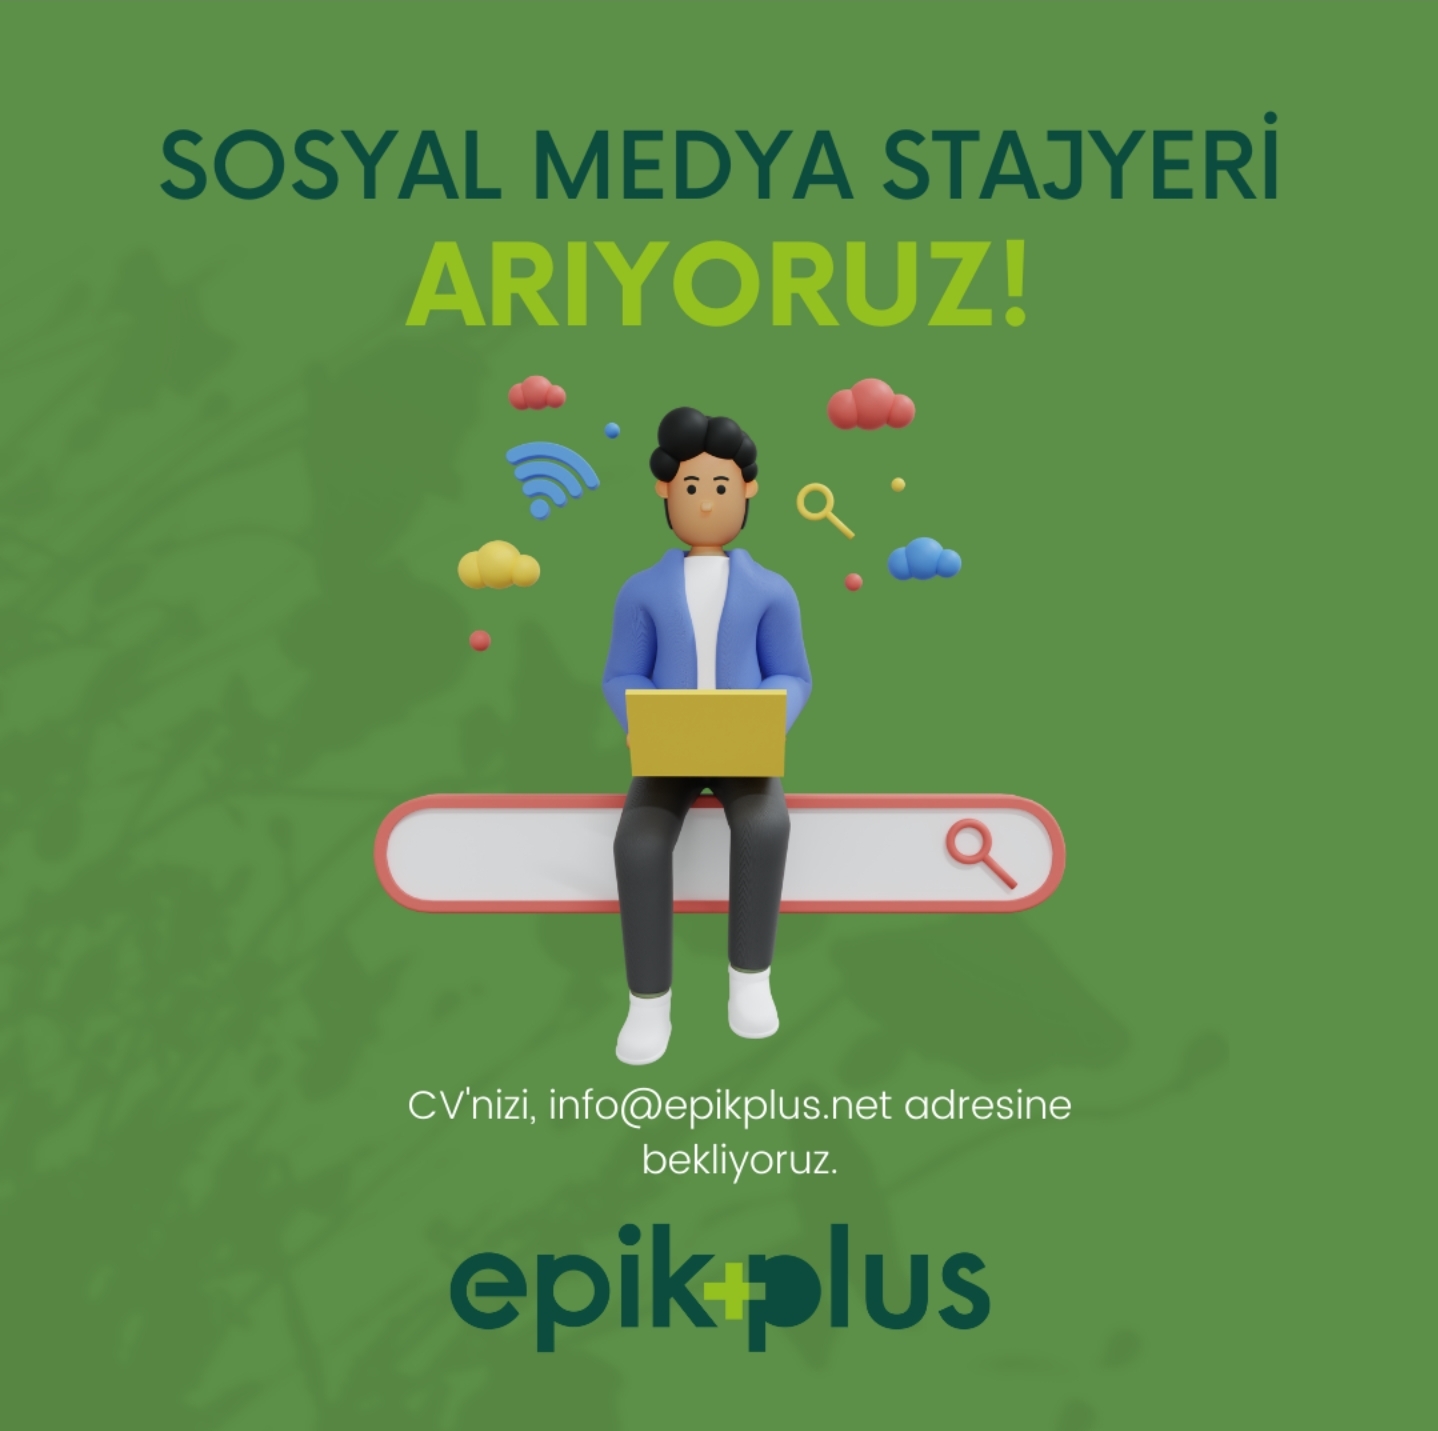 Epik Plus Stajyerini (Geleceğin Sosyal Medya Uzmanını) Arıyor! 📣 📢